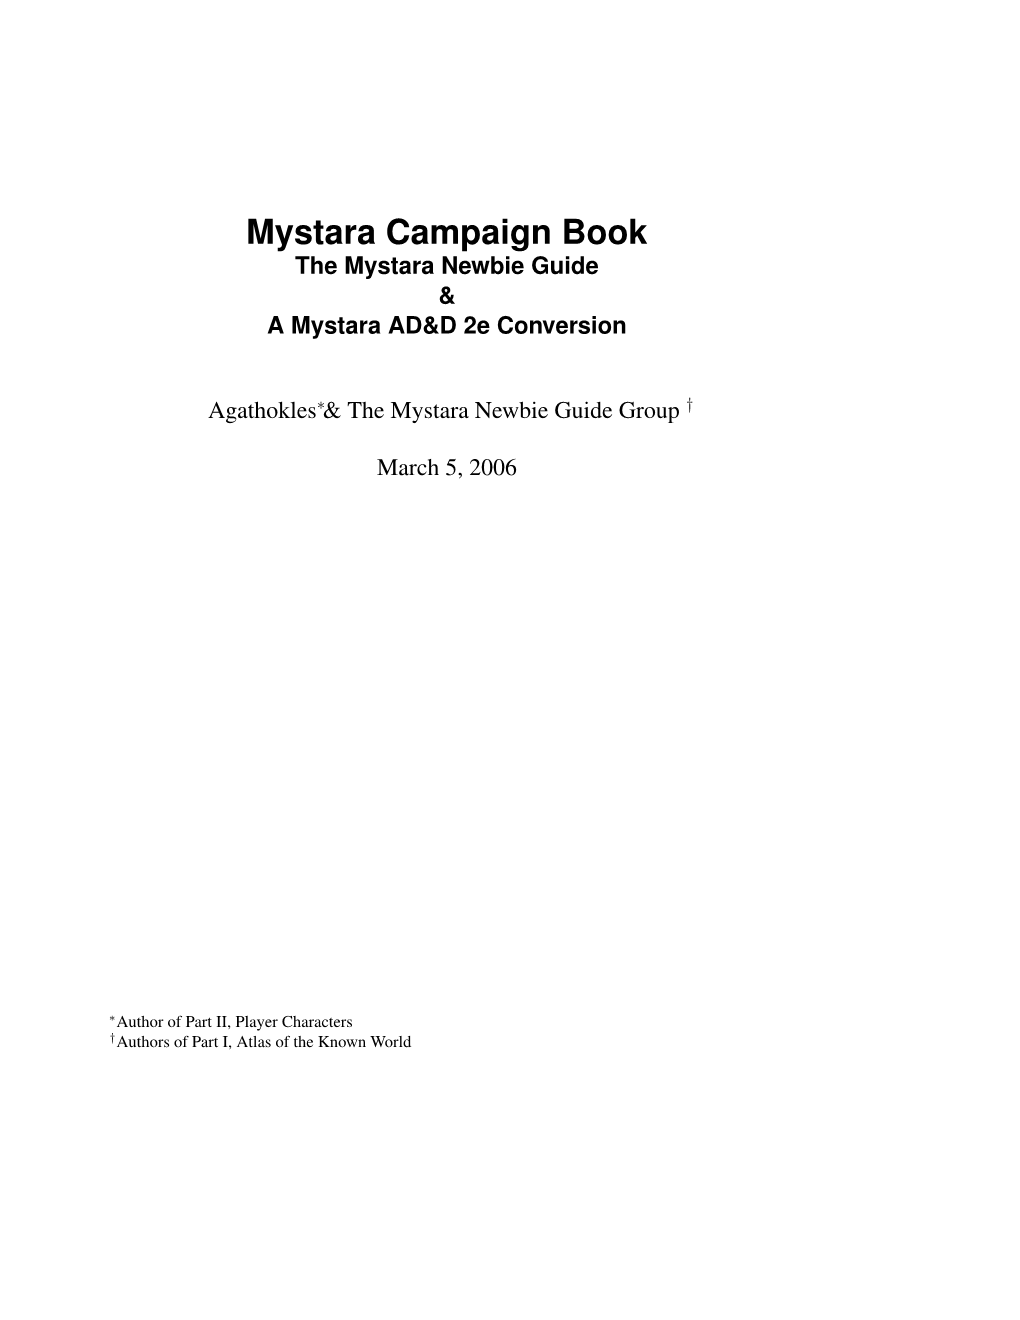 Mystara Campaign Book the Mystara Newbie Guide & a Mystara AD&D 2E Conversion